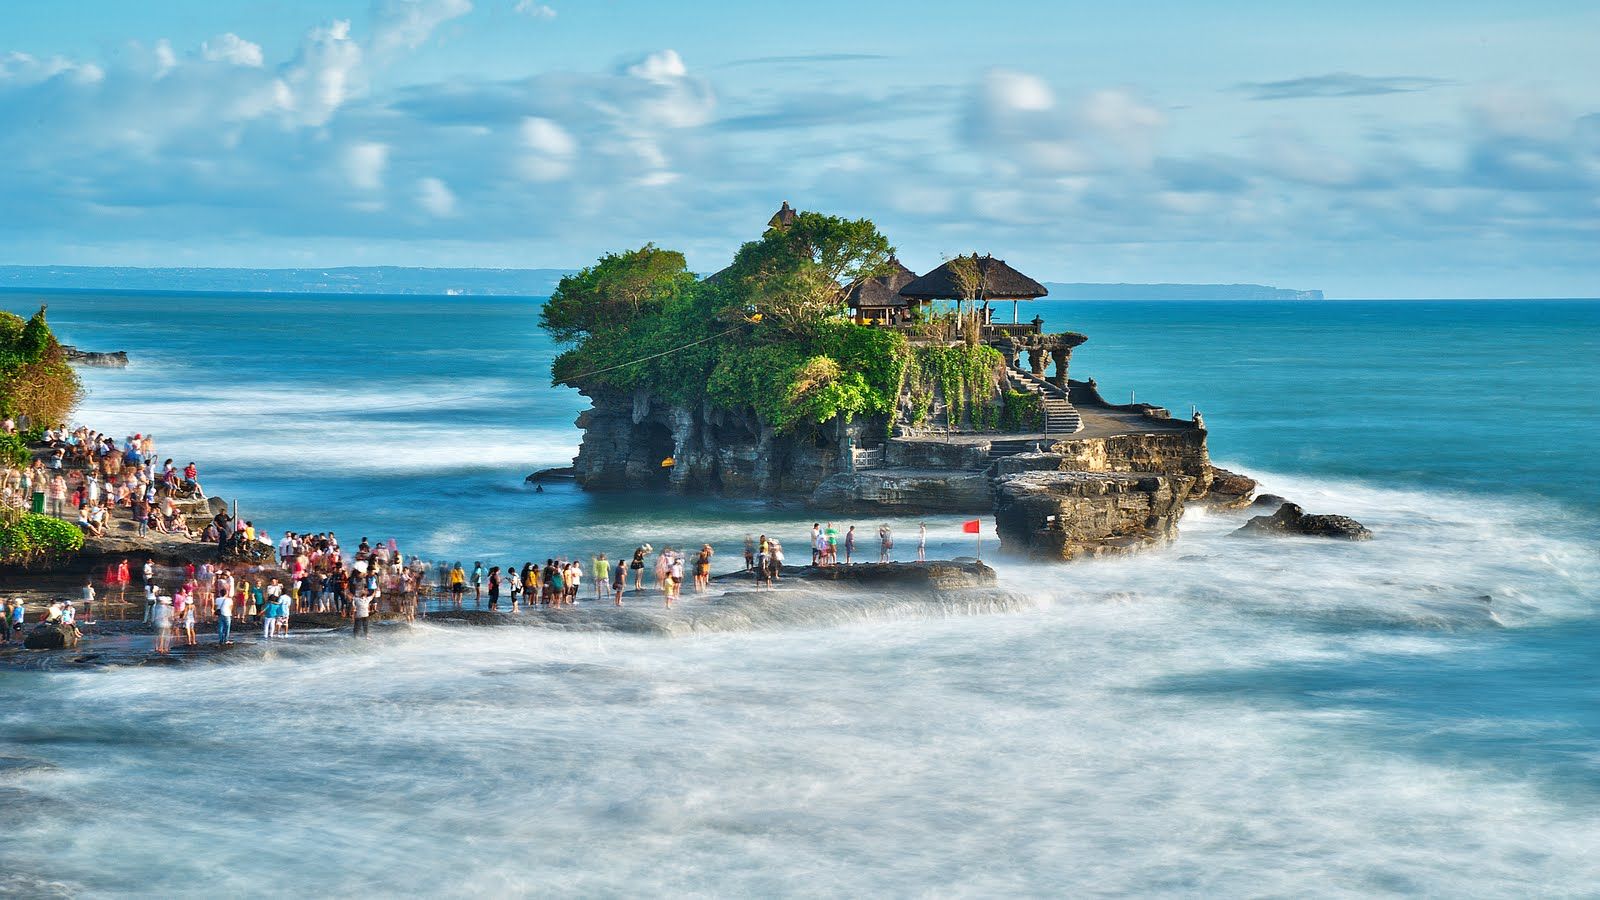 دورنمای شگفت انگیز بنای تانا لات در جزیره مشهور بالی